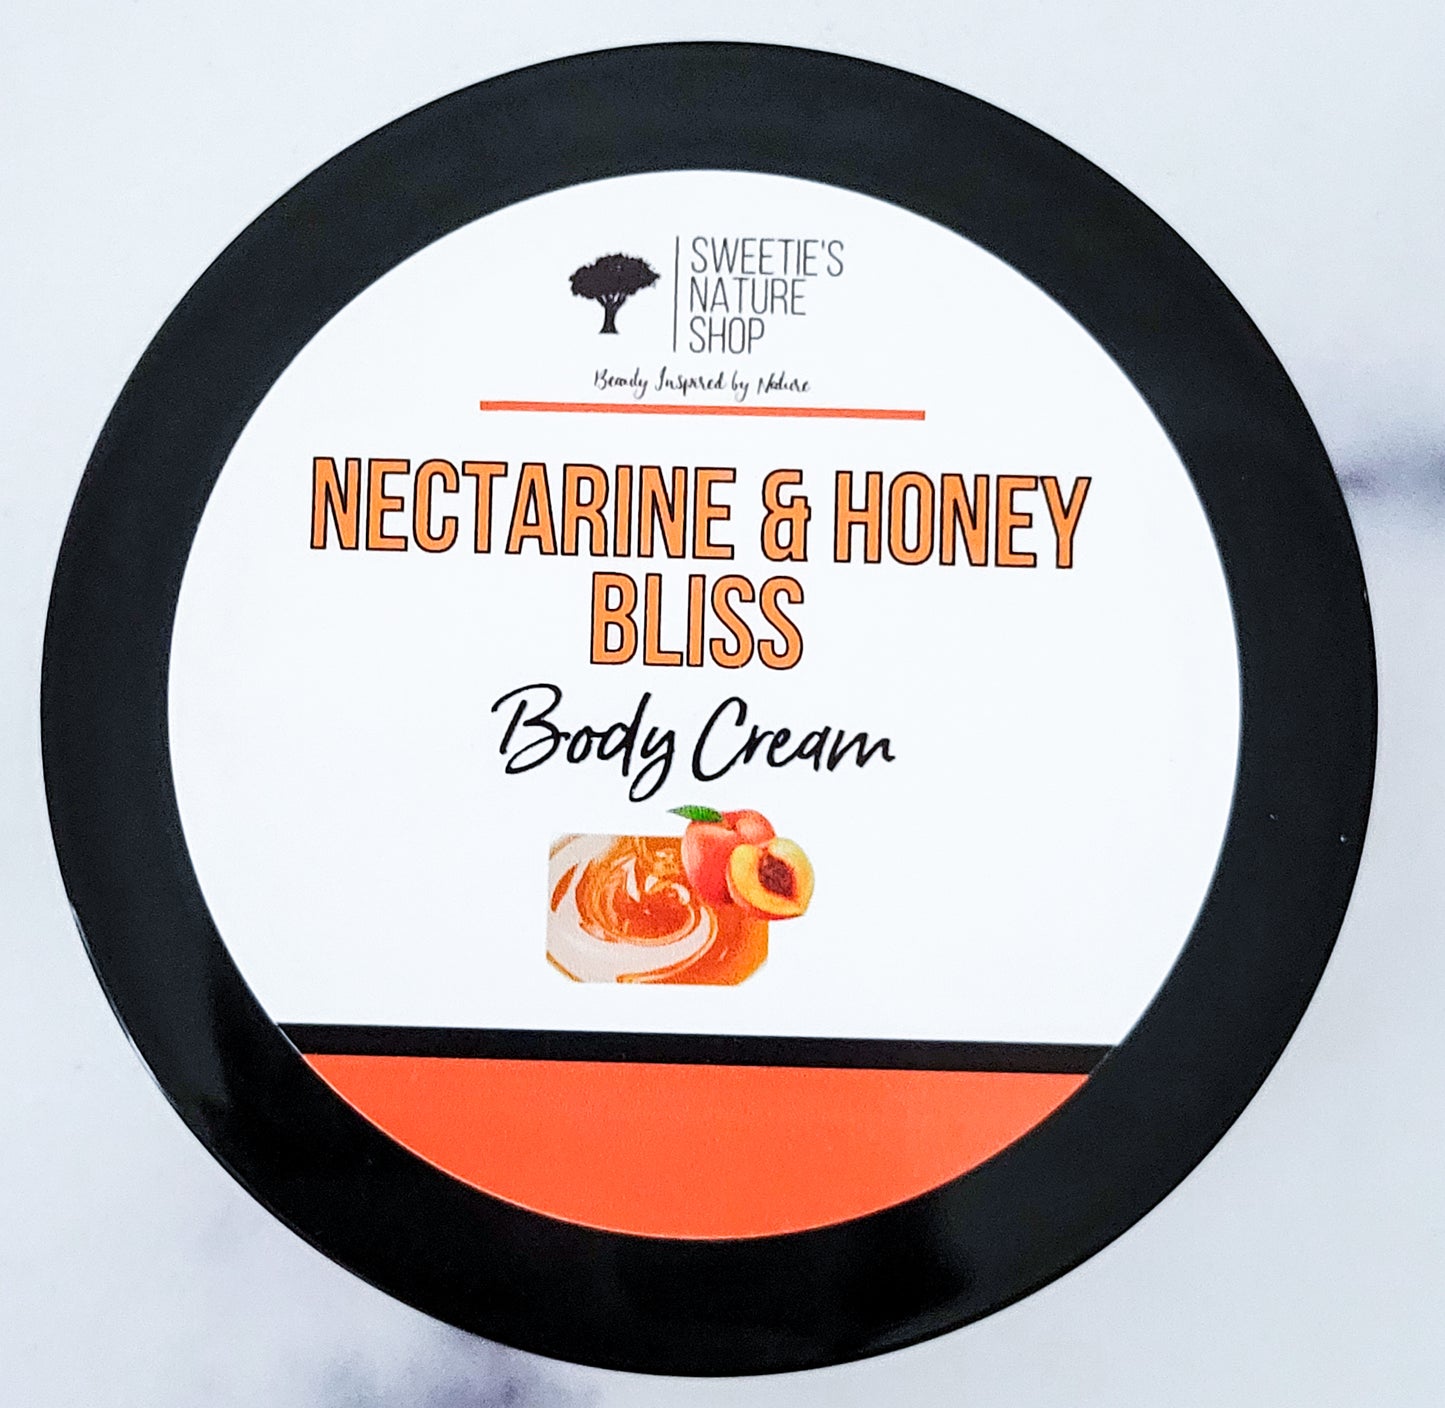 Nectarine & Honey Bliss Body Cream